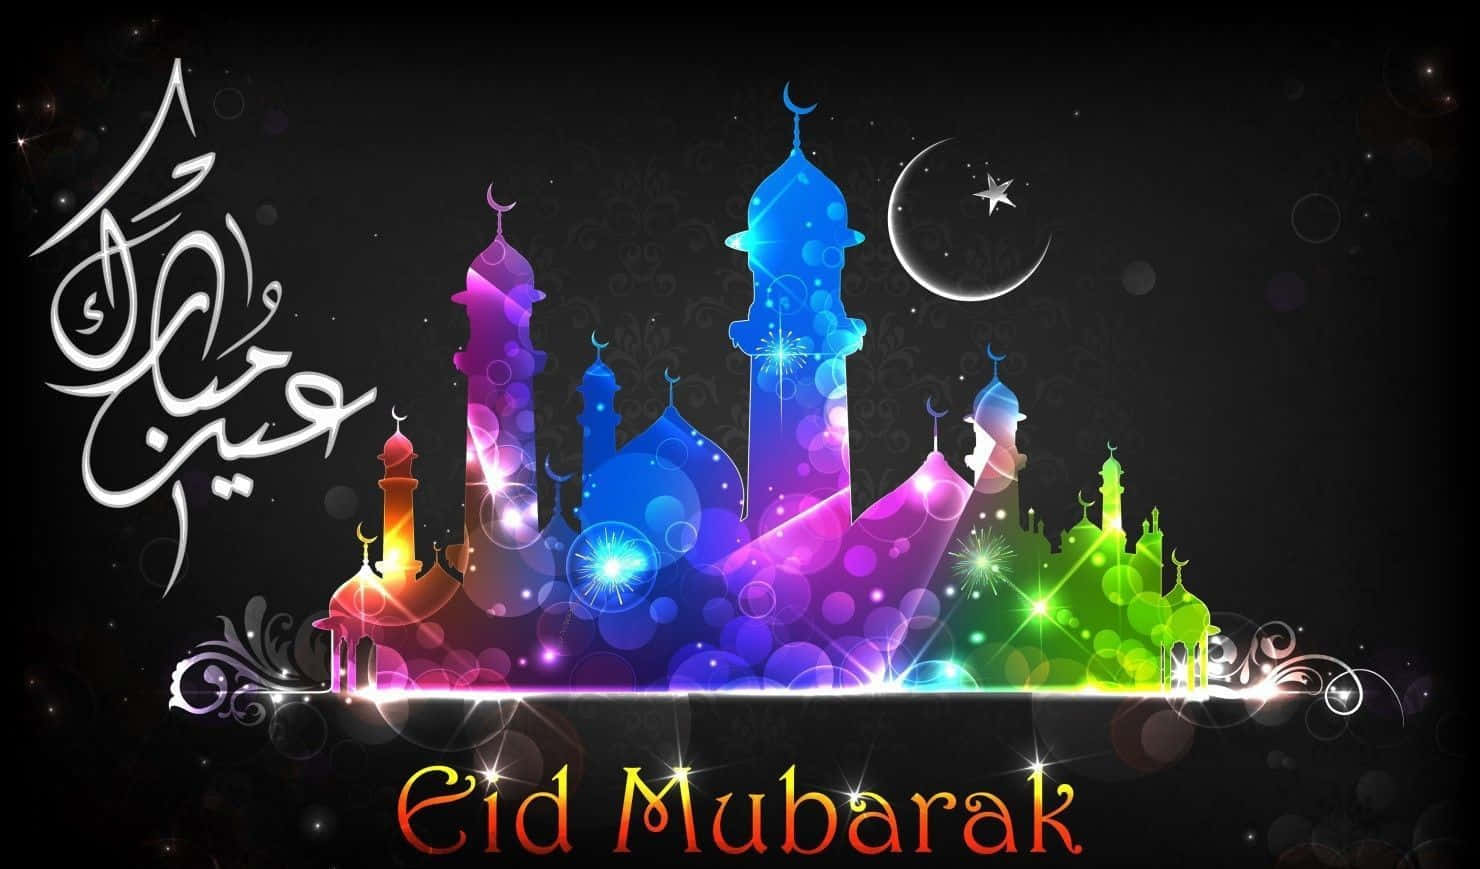 Celebralo Spirito Di Eid Mubarak Con Amici E Famiglia.